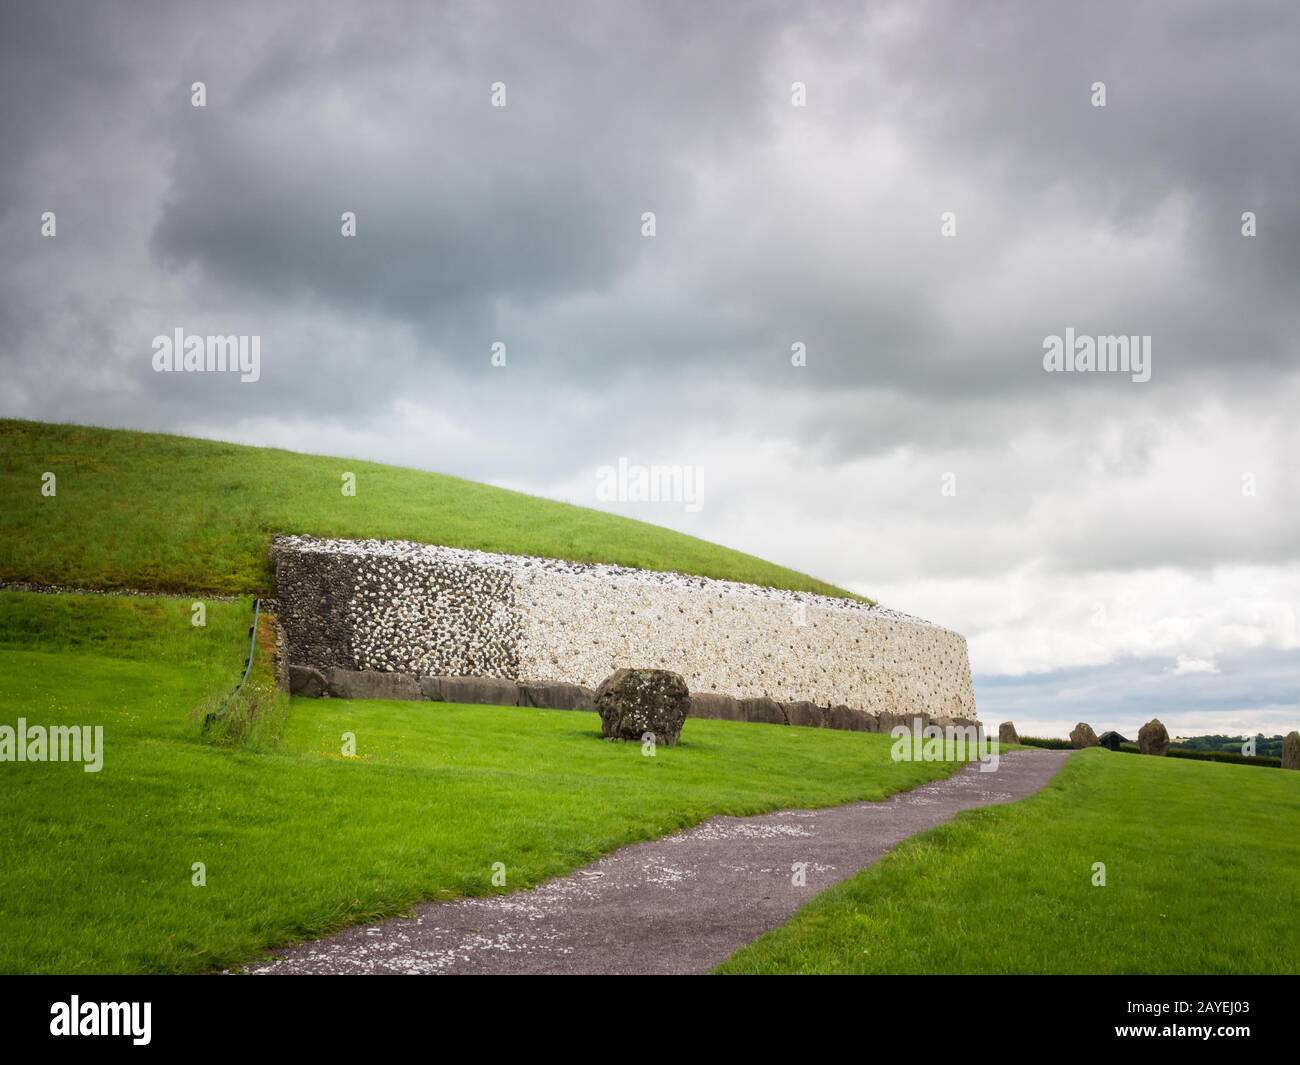 Prehistoric site of newgrange in ireland Stock Photo